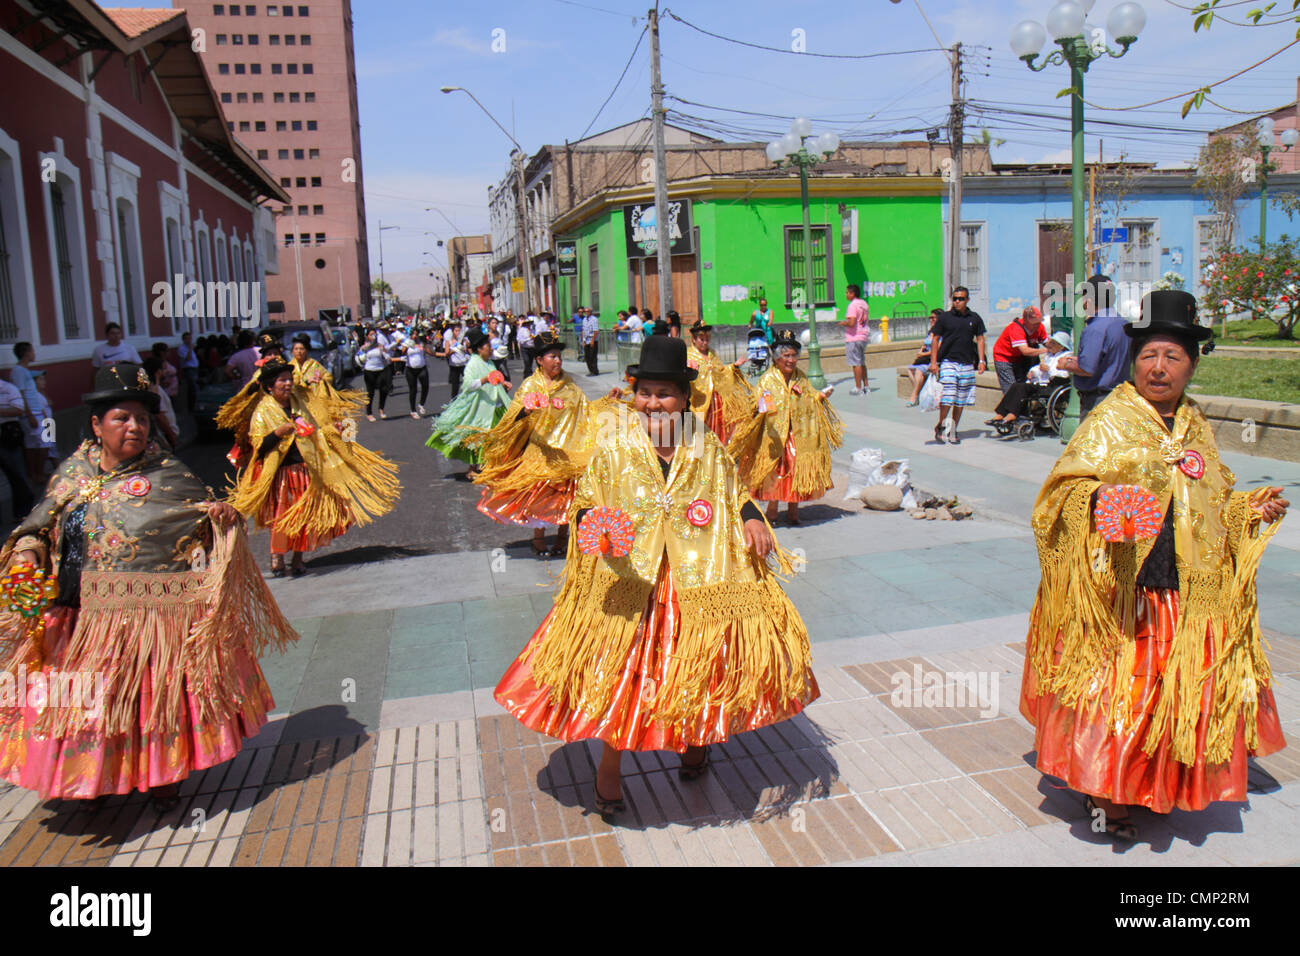 Arica Chile,Plaza Colón,Carnaval Andino,desfile,indígena,patrimonio aymara,danza tradicional folklórica,compañía,mujer hispana wome Foto de stock